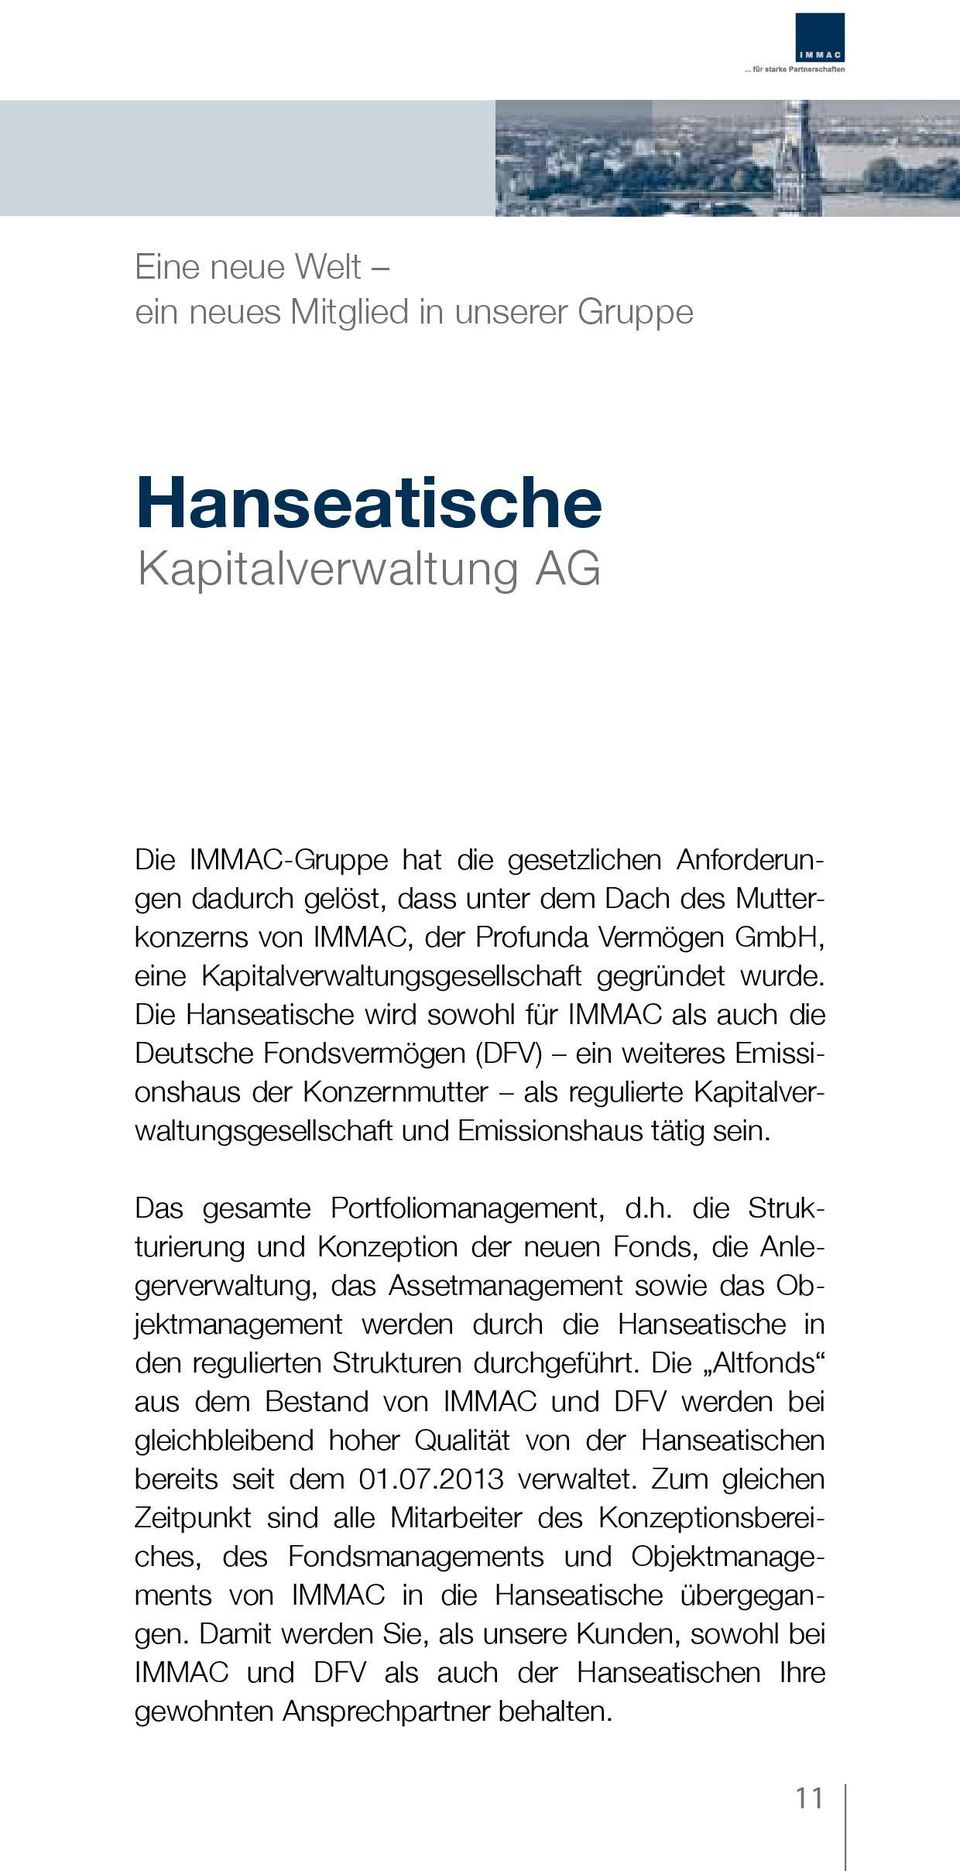 Die Hanseatische wird sowohl für IMMAC als auch die Deutsche Fondsvermögen (DFV) ein weiteres Emissionshaus der Konzernmutter als regulierte Kapitalverwaltungsgesellschaft und Emissionshaus tätig